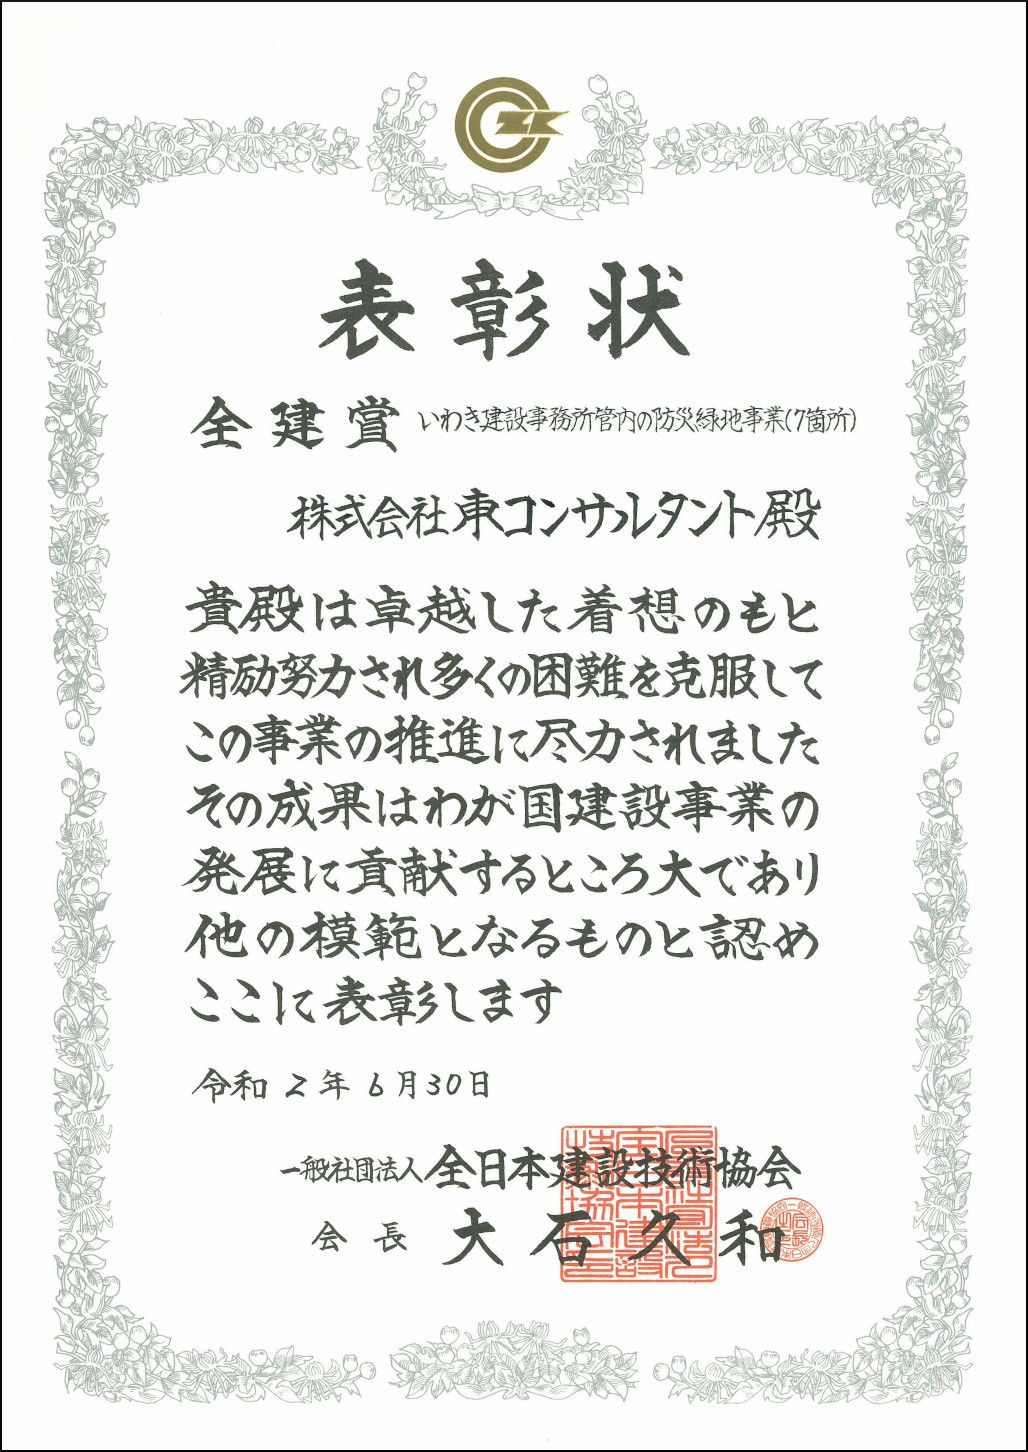 一般社団法人 全日本建設技術協会様より表彰状を頂きました 株式会社 東コンサルタント